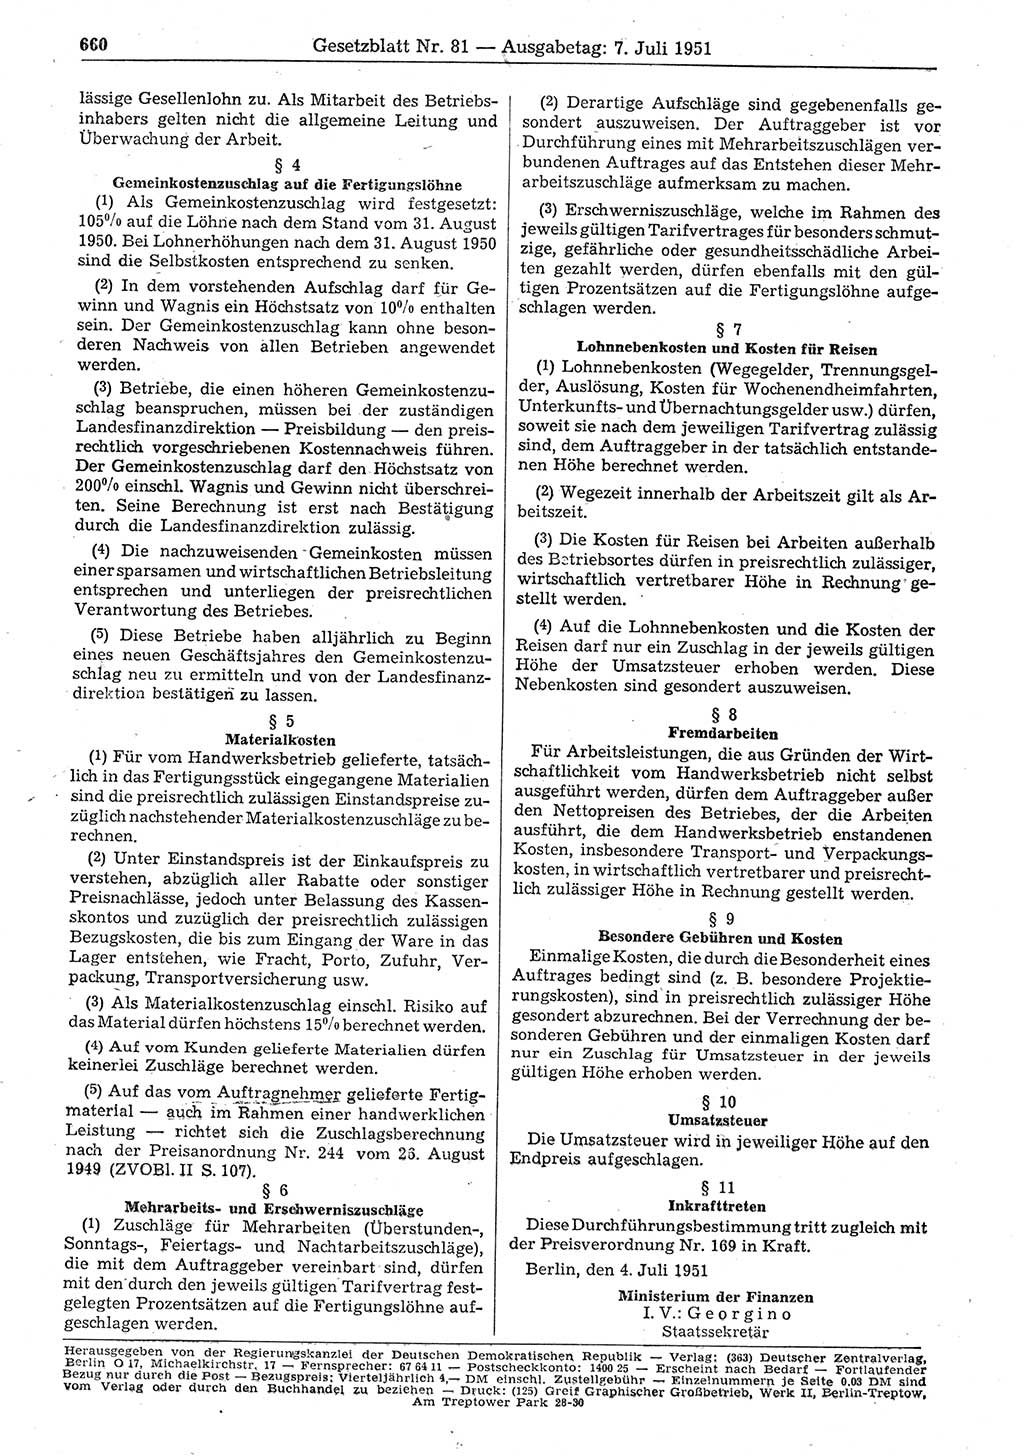 Gesetzblatt (GBl.) der Deutschen Demokratischen Republik (DDR) 1951, Seite 660 (GBl. DDR 1951, S. 660)